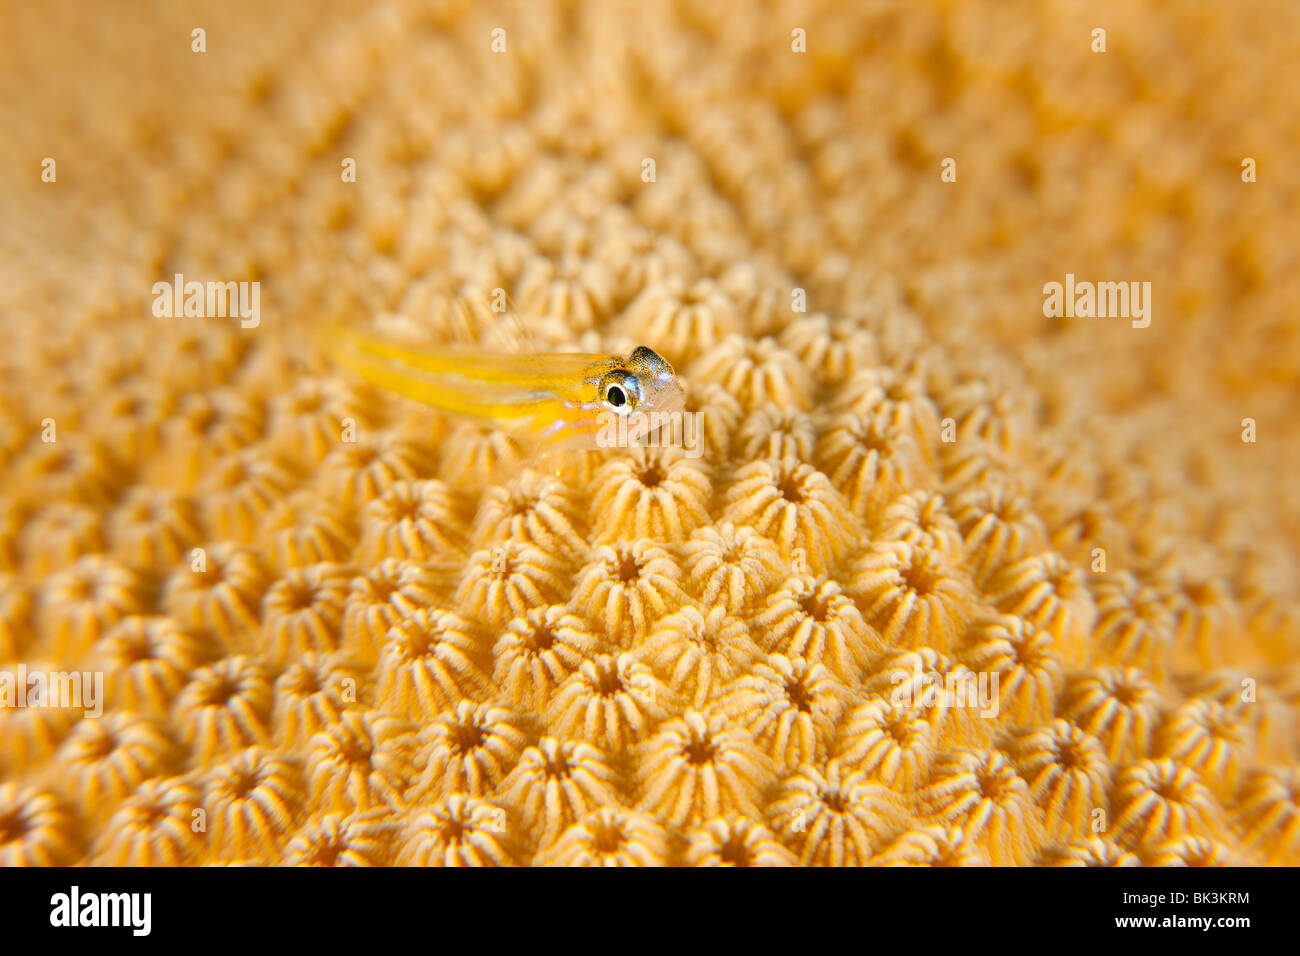 Coryphopterus lipernes gobie (menthe) perché sur une tête de corail, Bonaire, Antilles néerlandaises. Banque D'Images